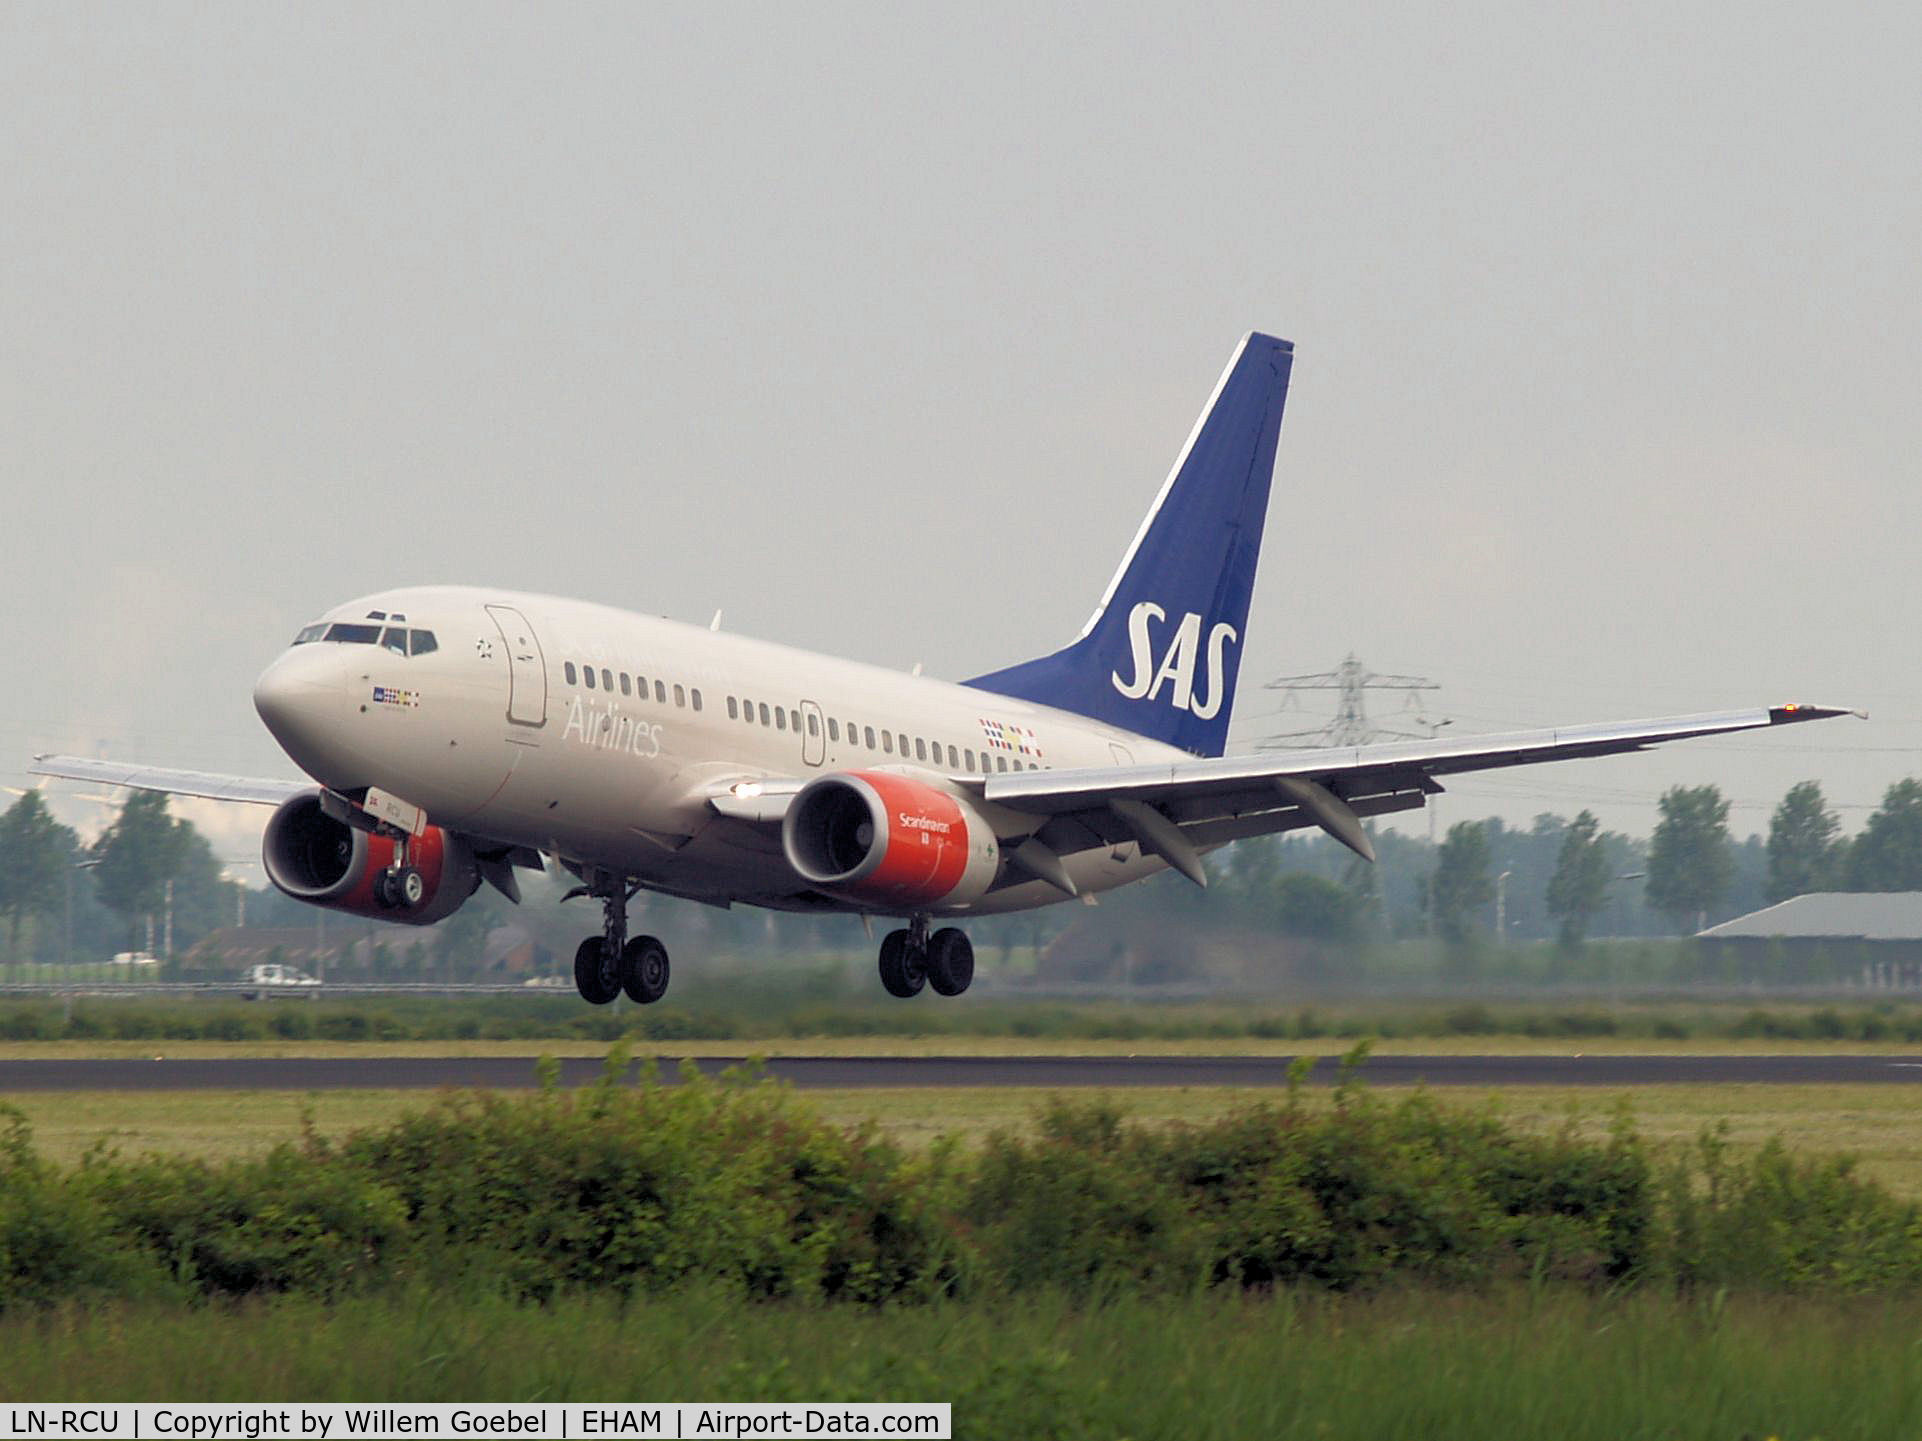 LN-RCU, 1999 Boeing 737-683 C/N 30190, Landing on runway R18 of Amsterdam Airport.